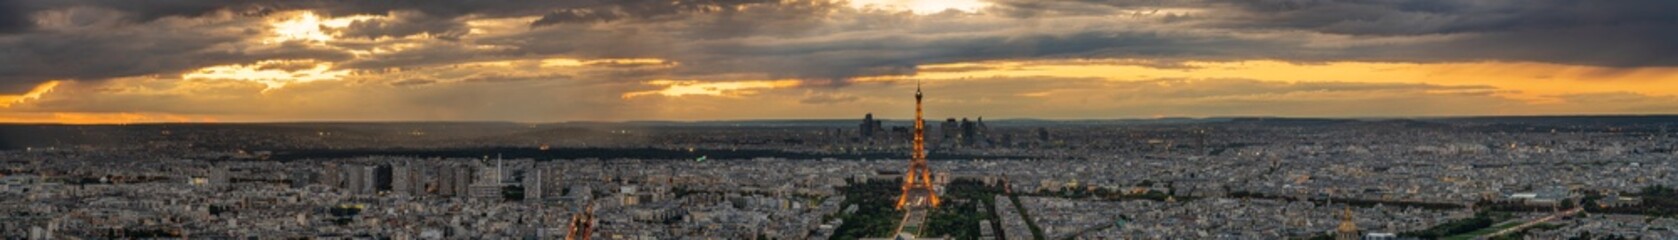 Beautiful sunset panorama of Paris. France